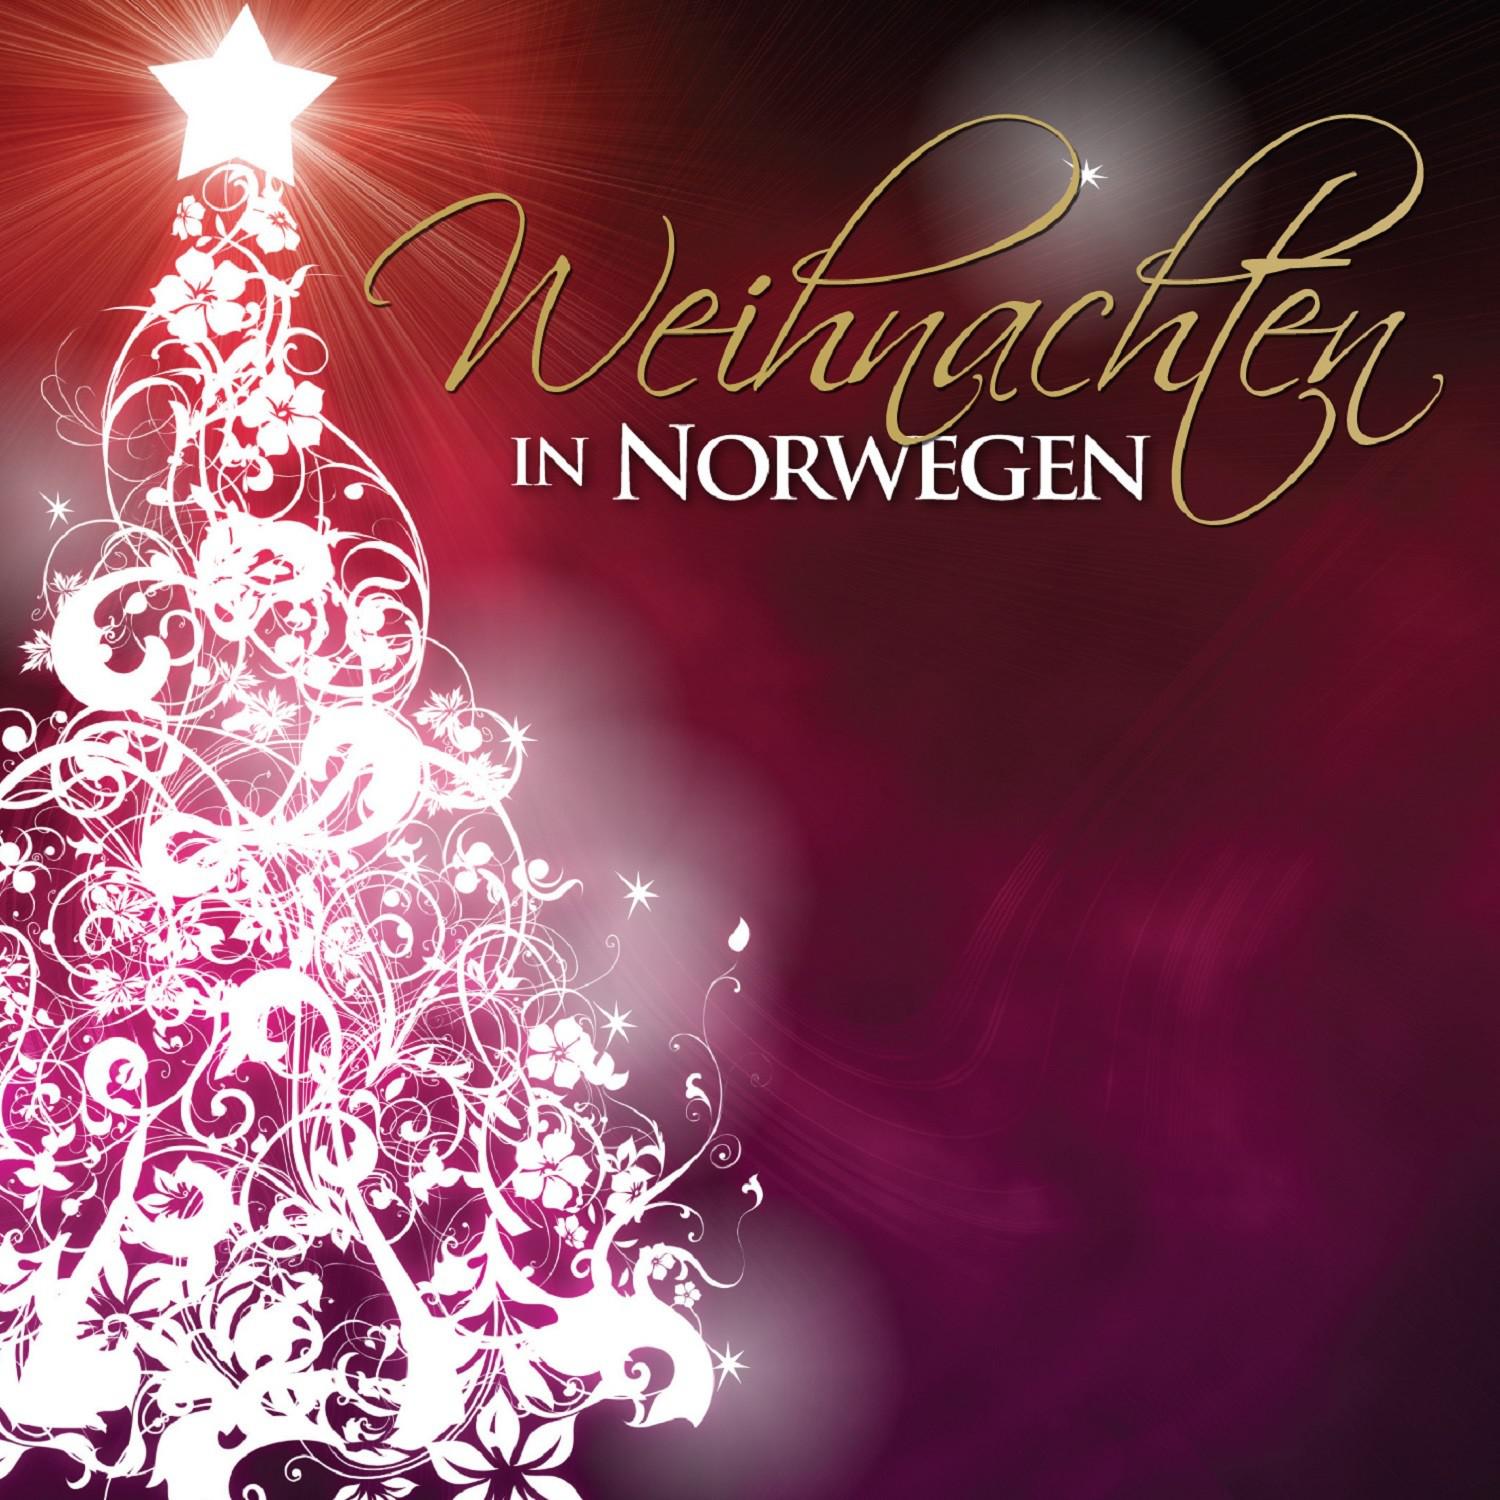 Weihnachten in Norwegen